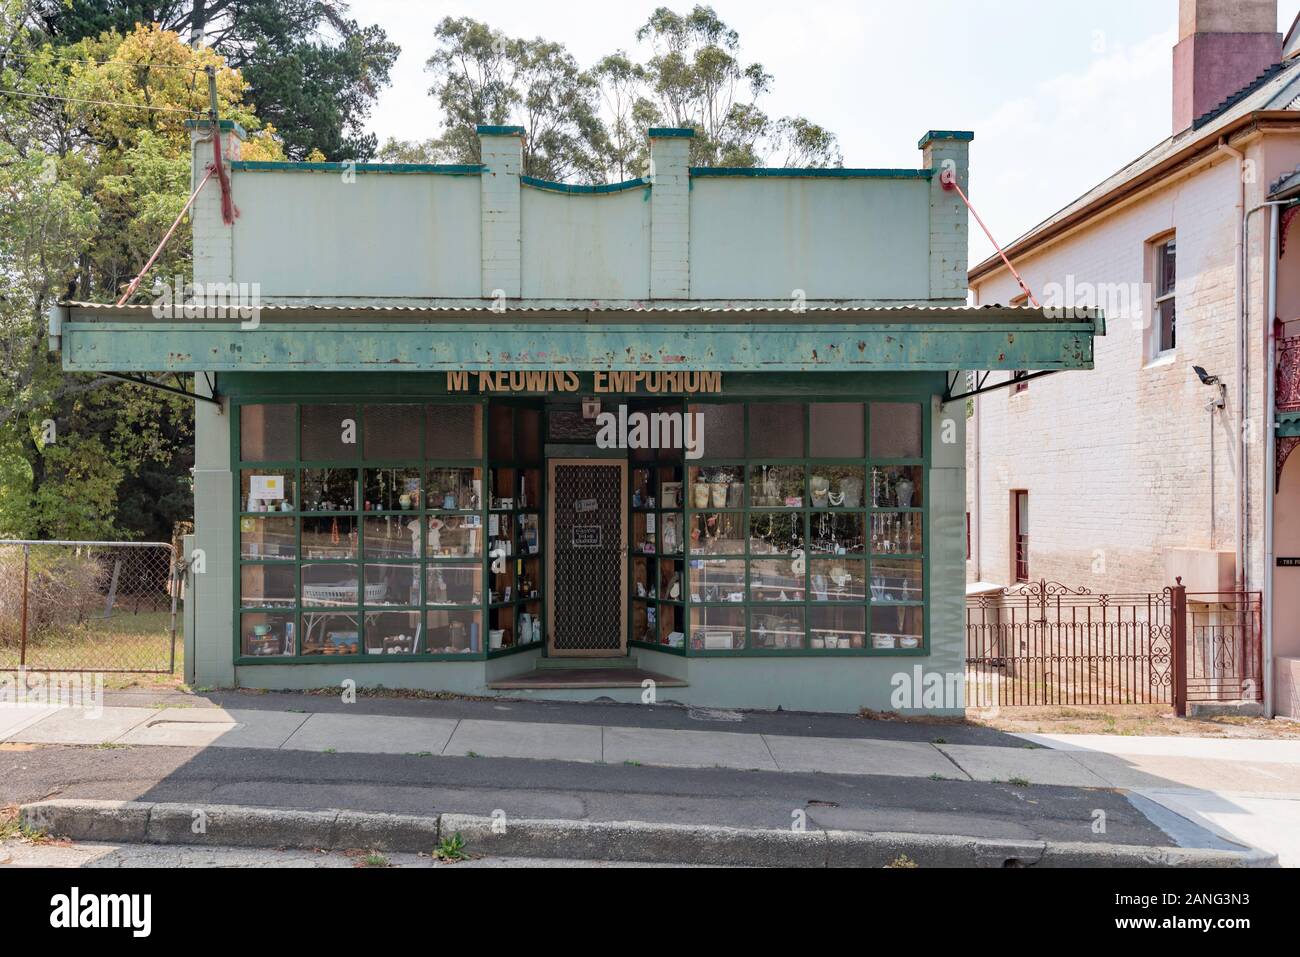 16 Station Street, Mount Victoria en las Montañas Azules de Nueva Gales del Sur es una tienda construida en 1904 en un sencillo diseño de fachada de vidrio y parapeto. Foto de stock